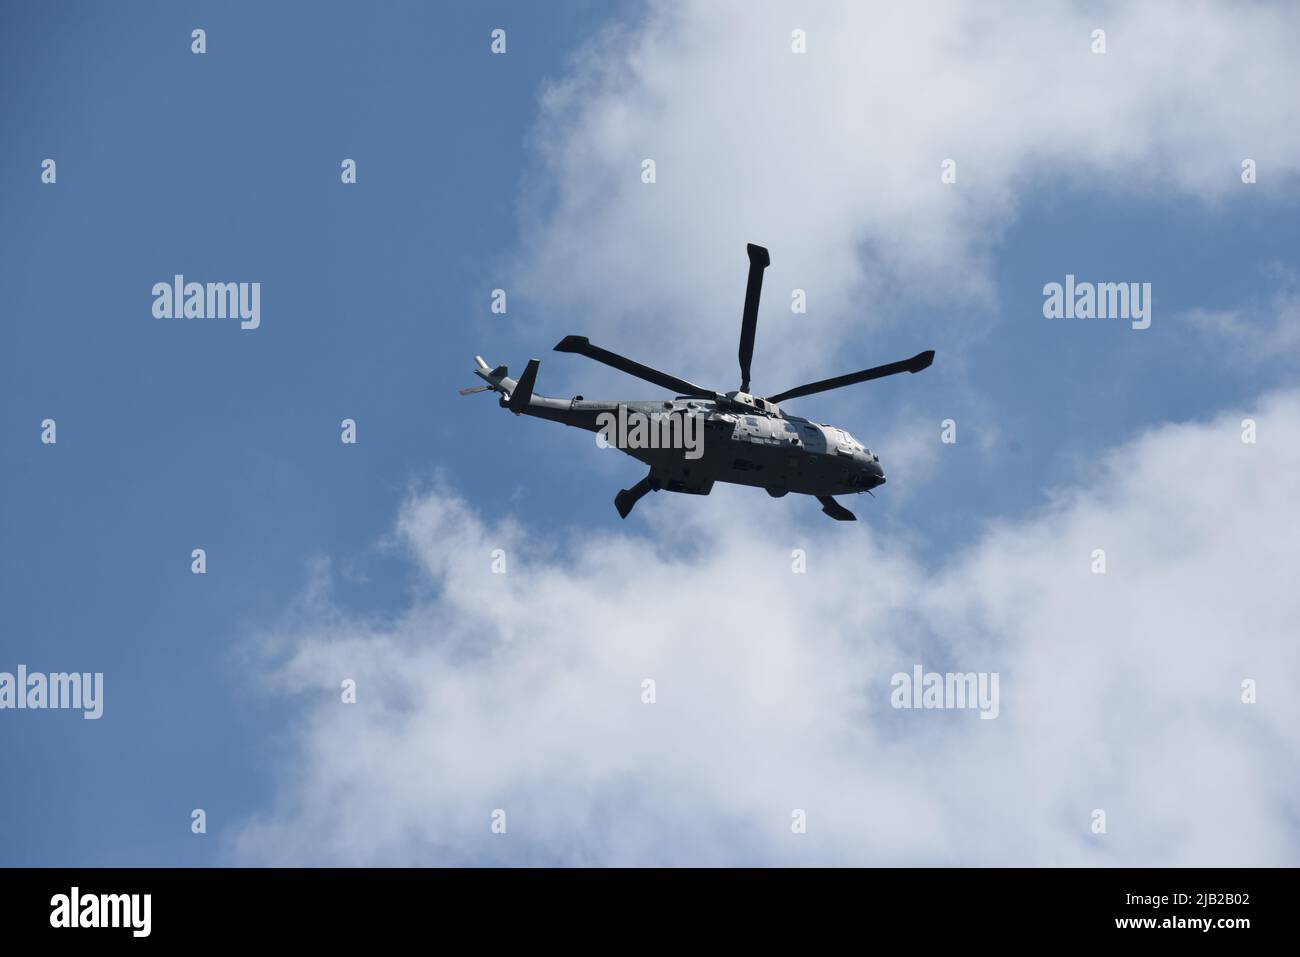 Londres, Angleterre, 2 juin 2022 - des hélicoptères de la Marine royale volent en formation sur la route de la célébration du jubilé de queens survol crédit: Tom Holt/Alay Live News Banque D'Images